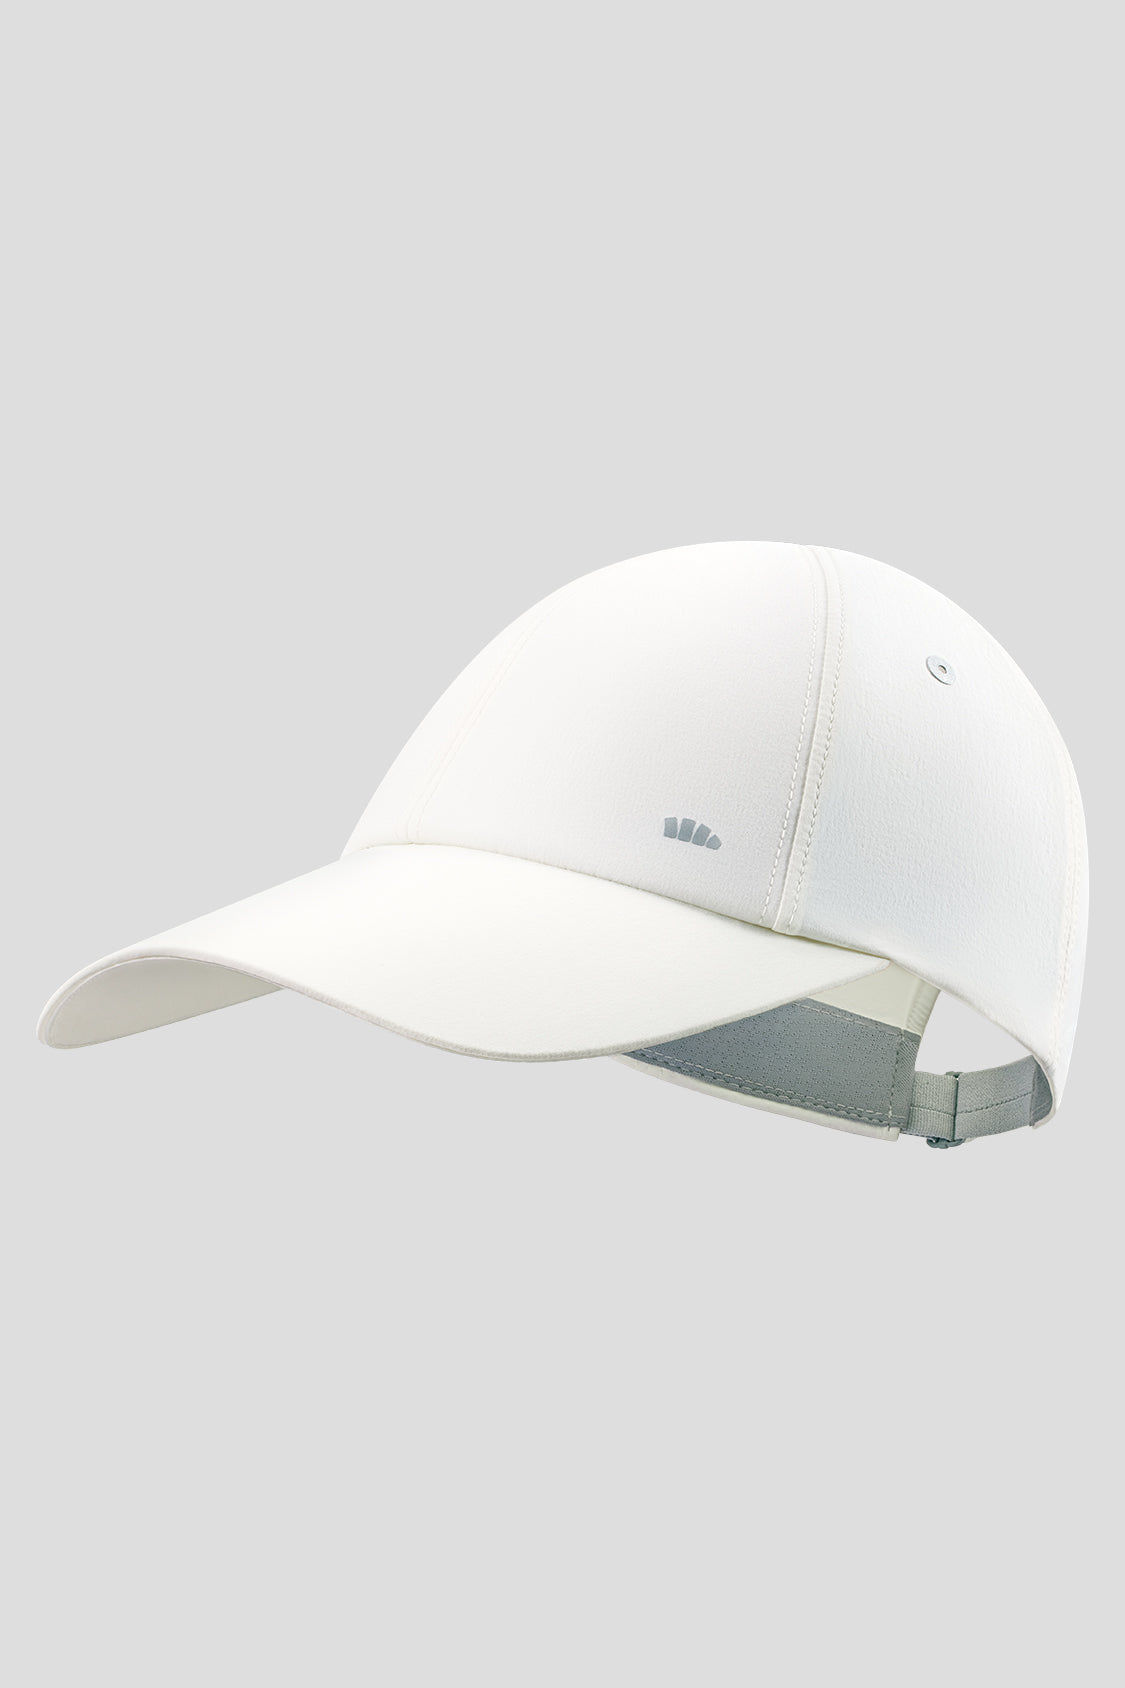 Ranyee - UV Protection Baseball Cap UPF50+